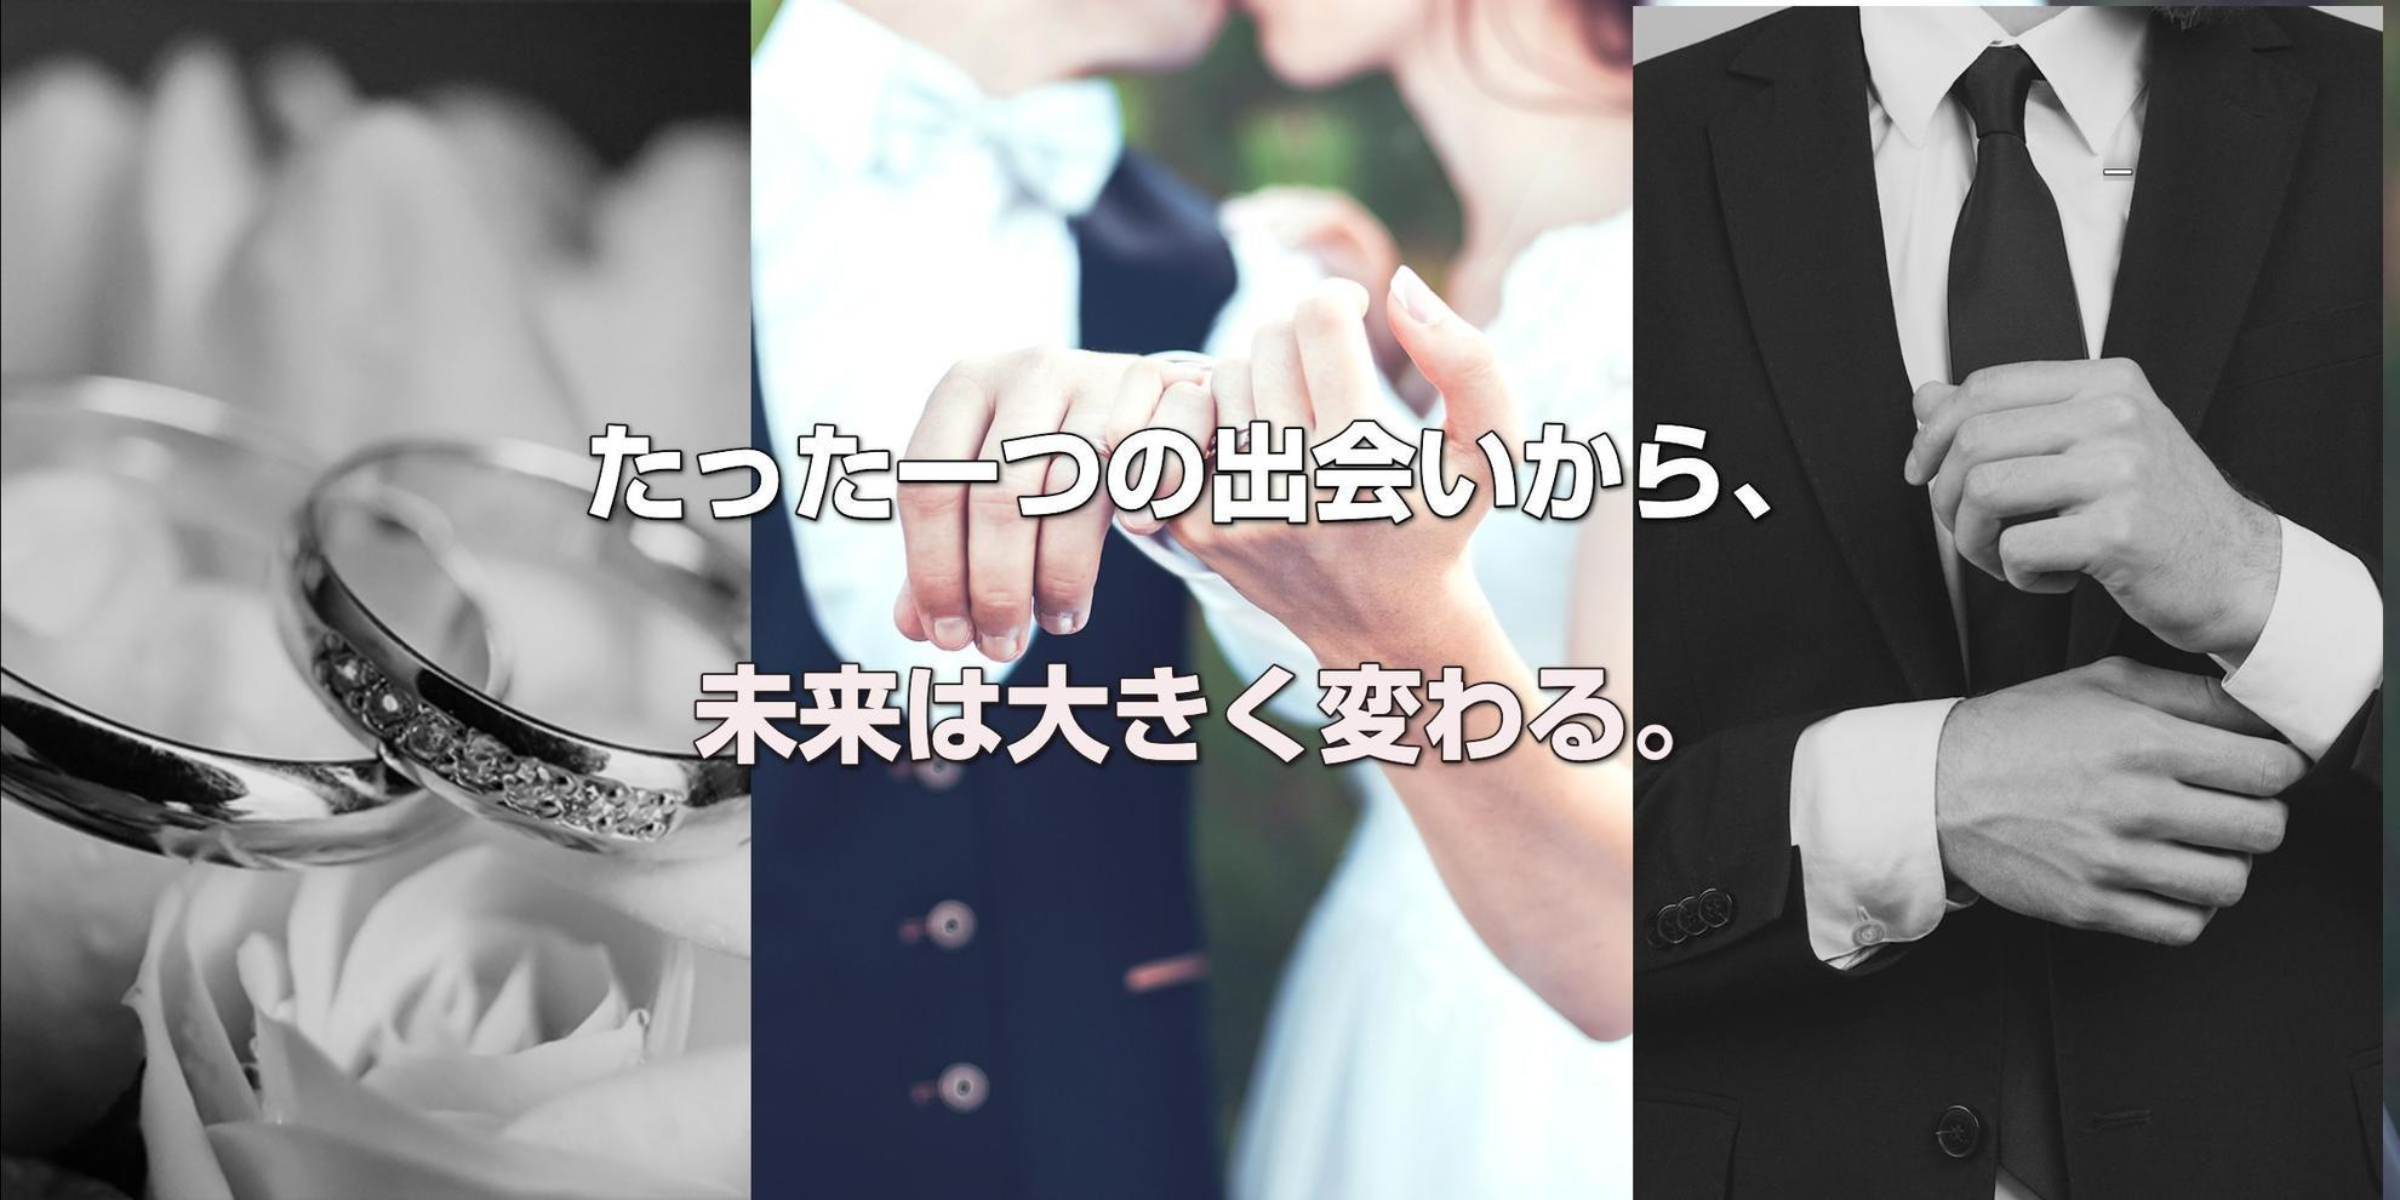 たった一つの出会いから、未来は大きく変わる。福岡の結婚相談所Bridal Club 御結び